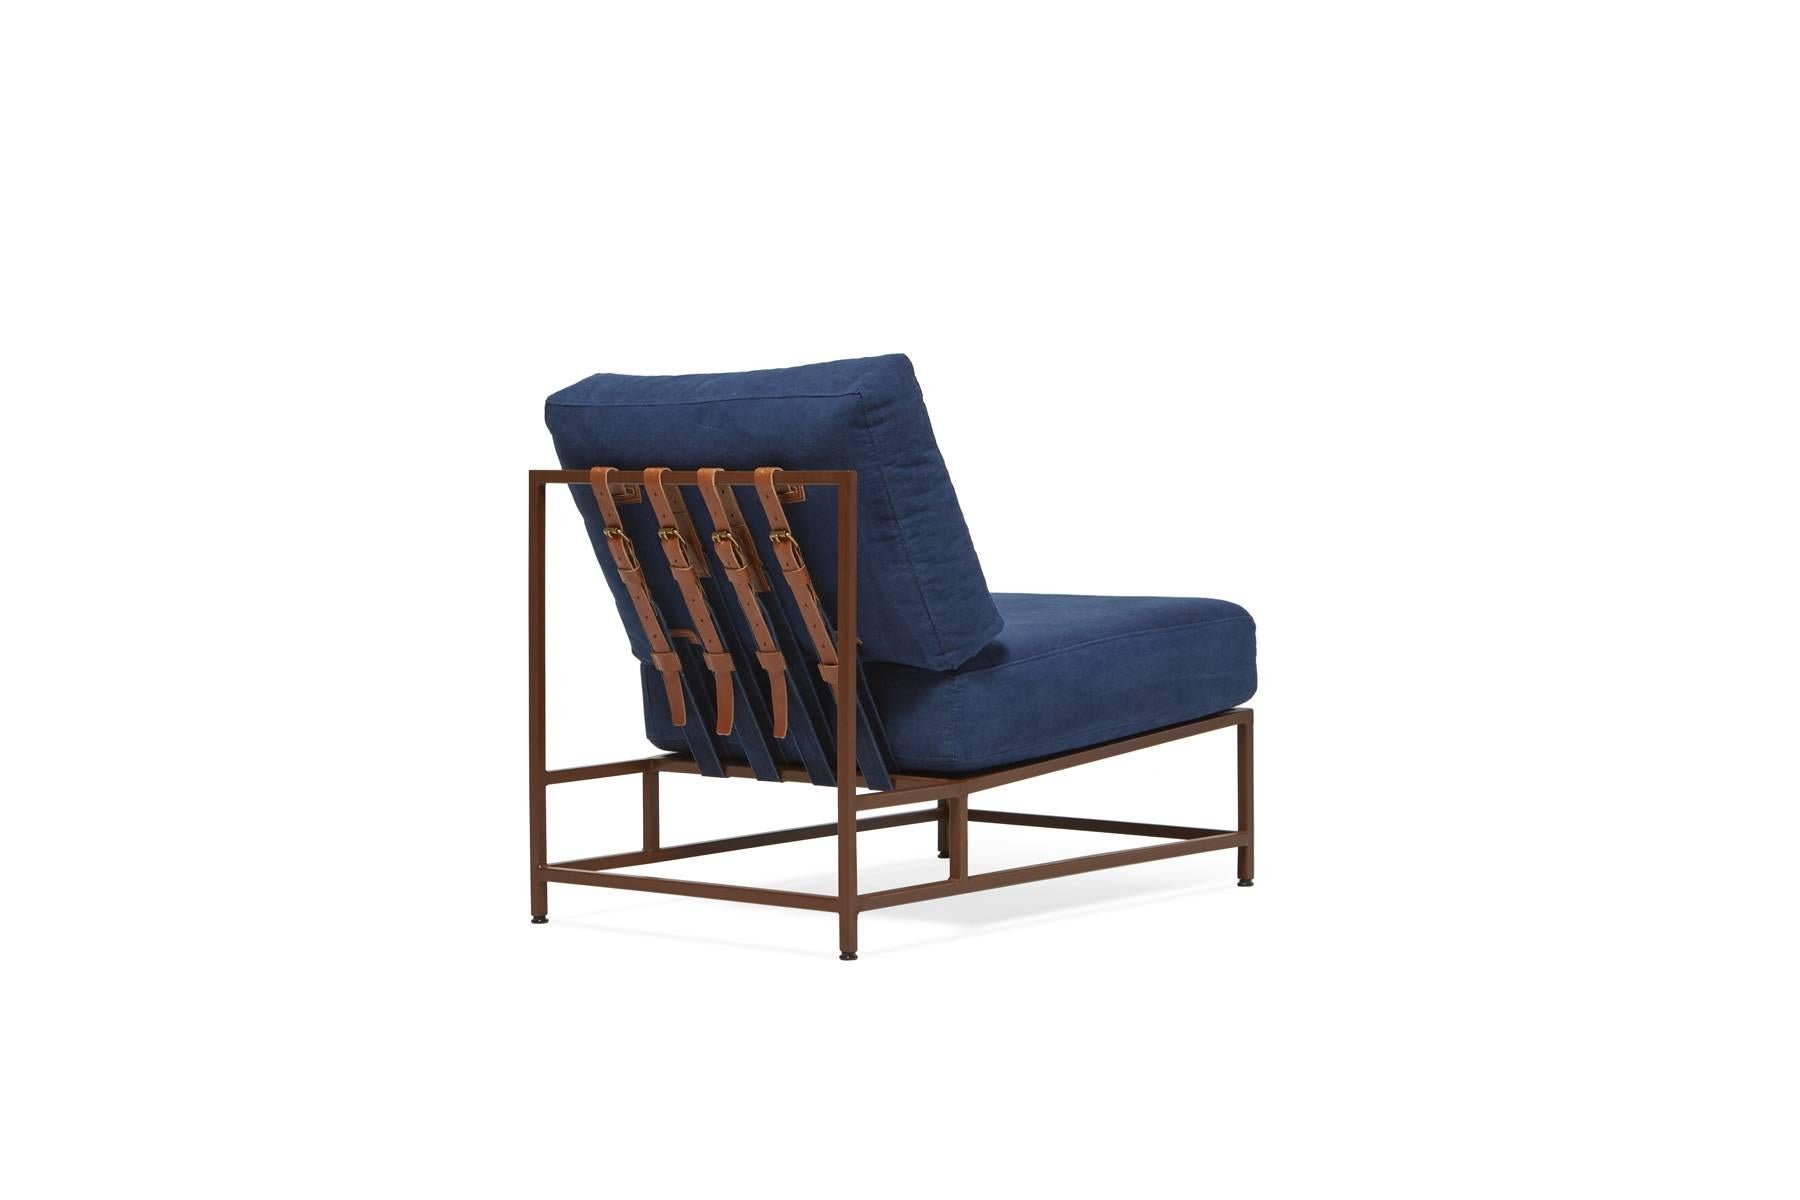 Der elegante und raffinierte Inheritance Chair ist eine großartige Ergänzung für fast jeden Raum. 

Inspiriert von einer abgenutzten Jeans und in Zusammenarbeit mit dem Team von Simon Miller, USA, wird unser indigoblauer Baumwollstoff in einem